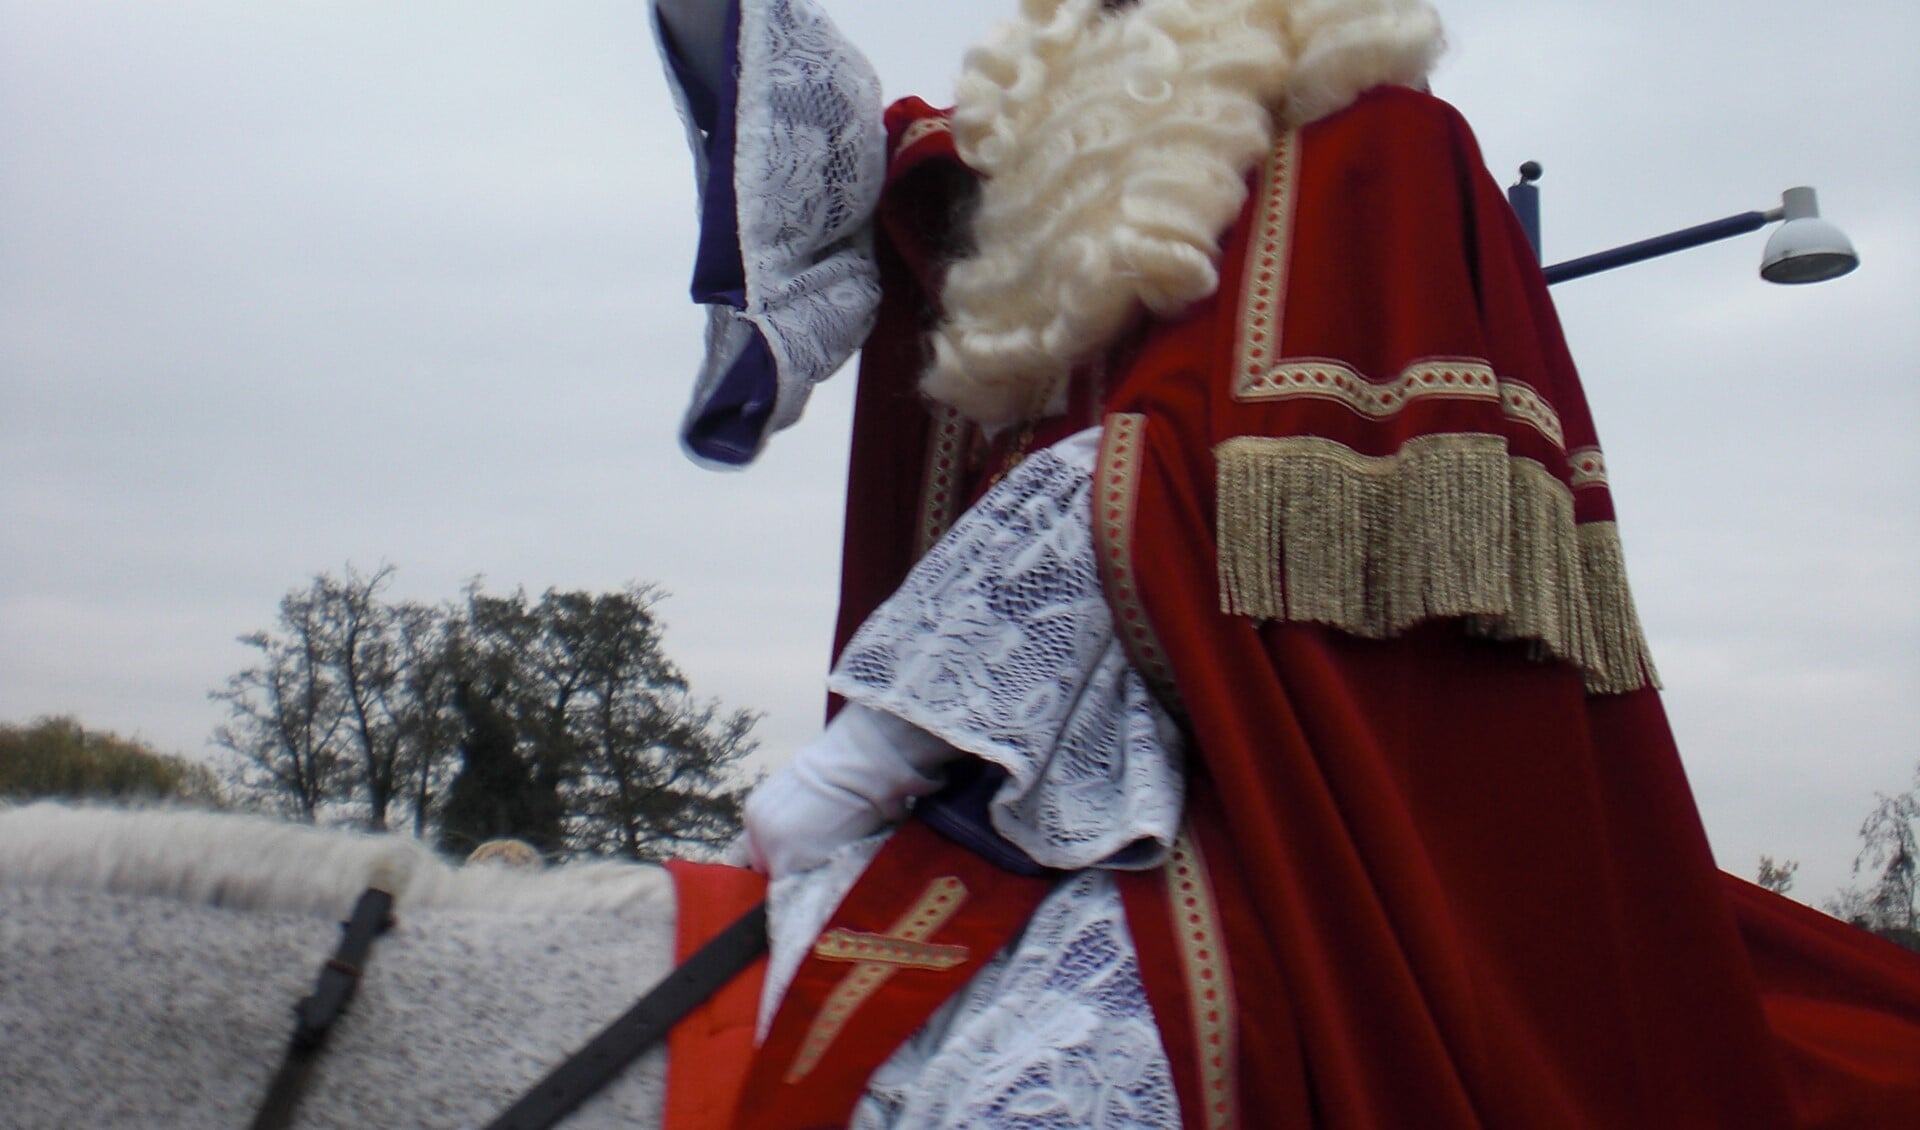 Landelijke aankomst van Sinterklaas in Ulft? Foto: PR